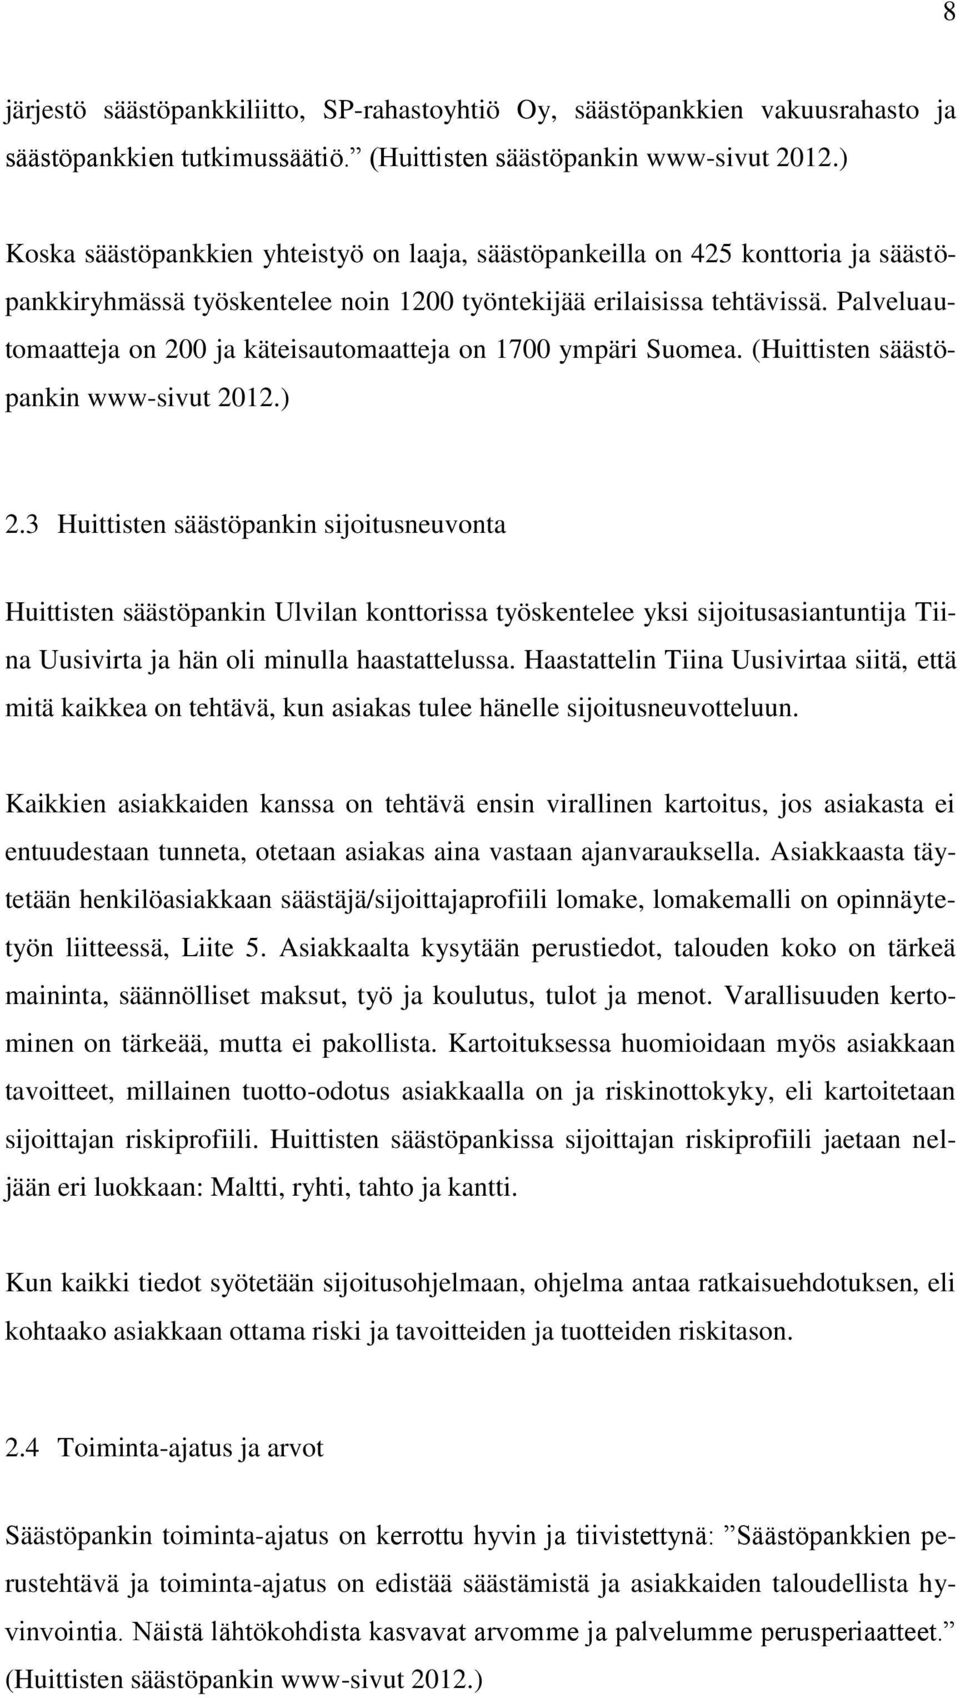 Palveluautomaatteja on 200 ja käteisautomaatteja on 1700 ympäri Suomea. (Huittisten säästöpankin www-sivut 2012.) 2.